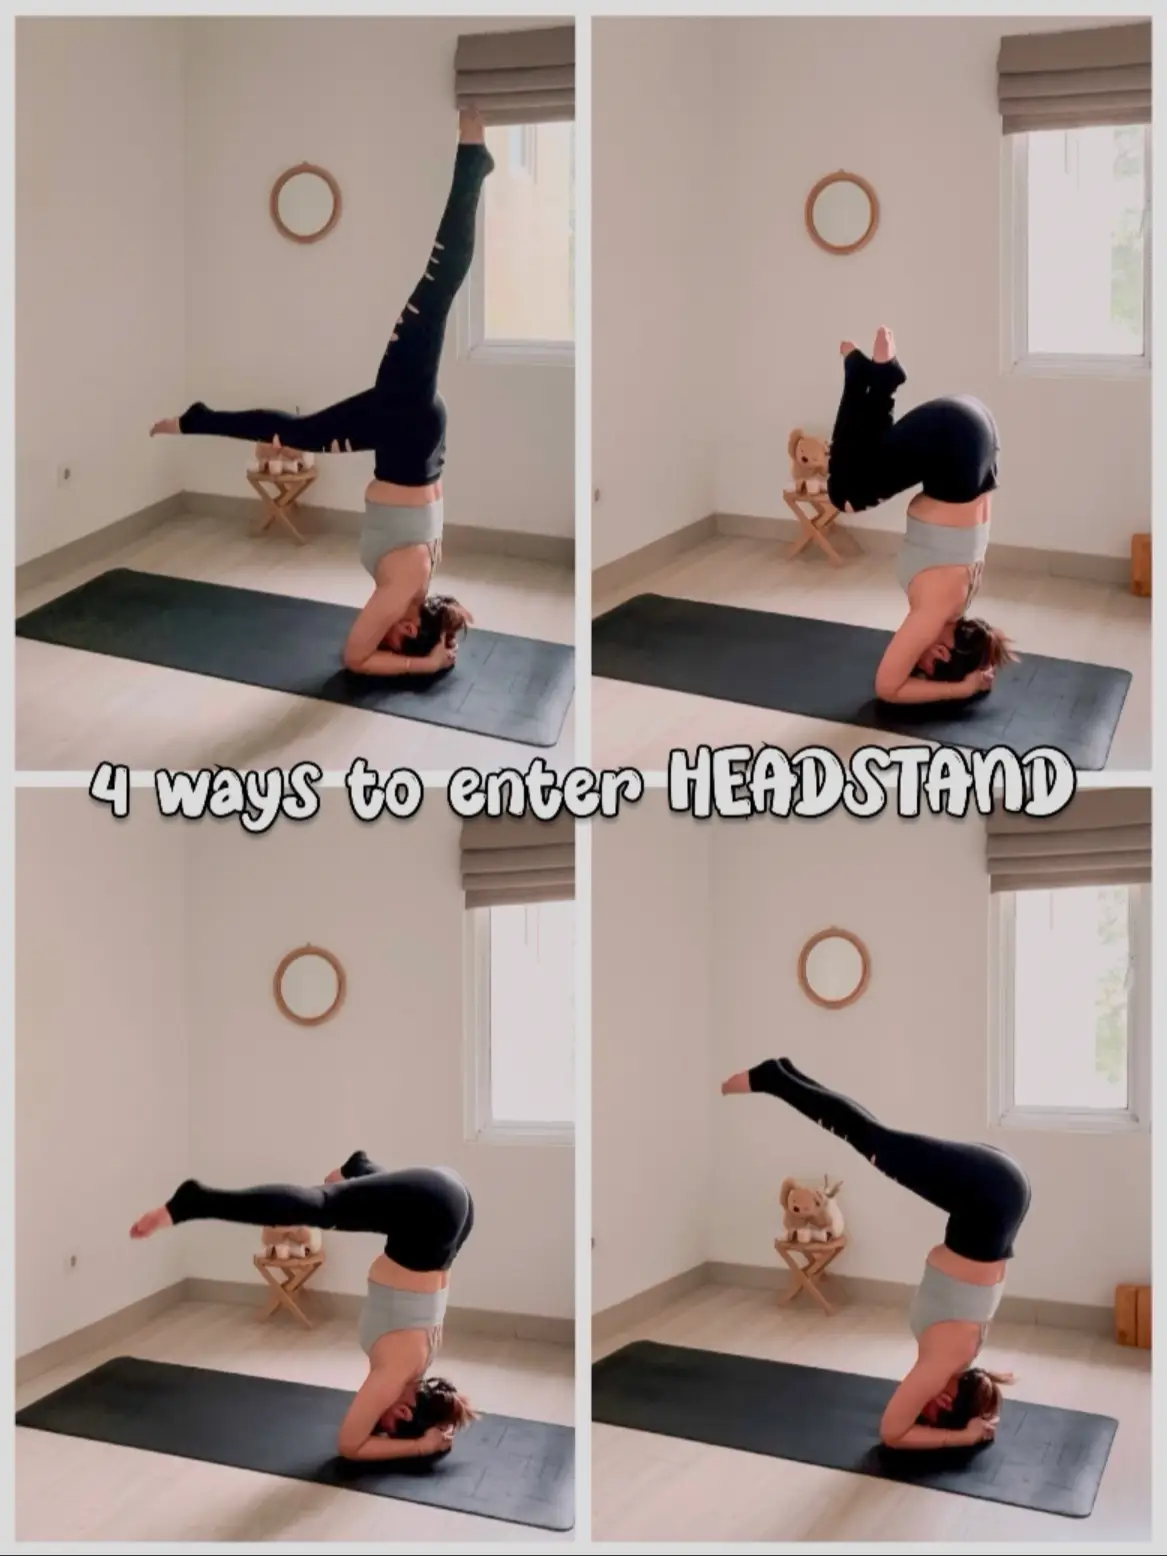 4 Cara untuk Headstand ✨, Video dipublikasikan oleh Ayta